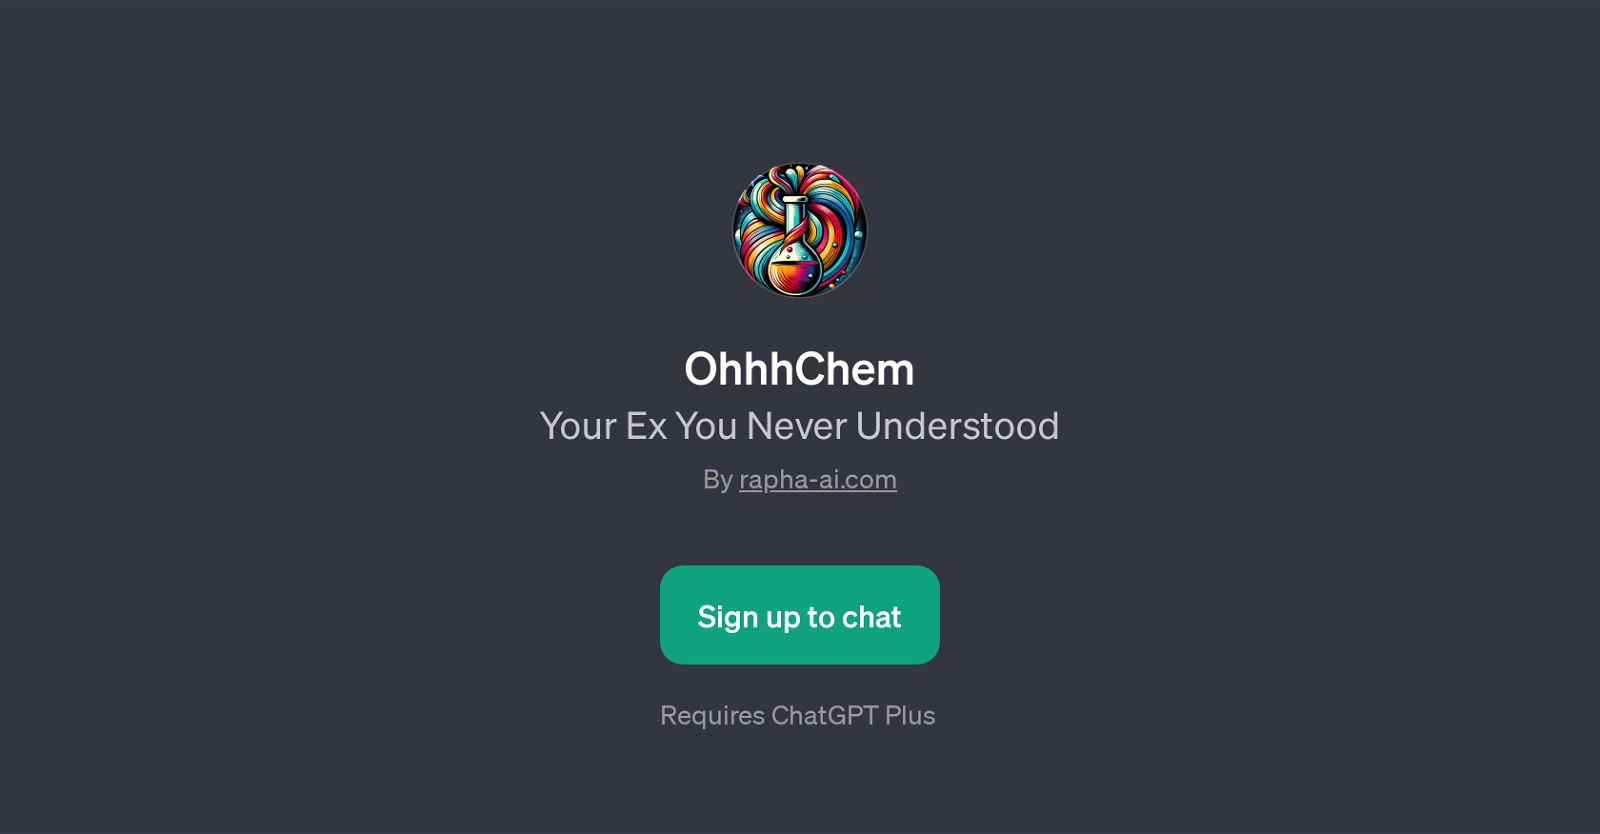 OhhhChem website